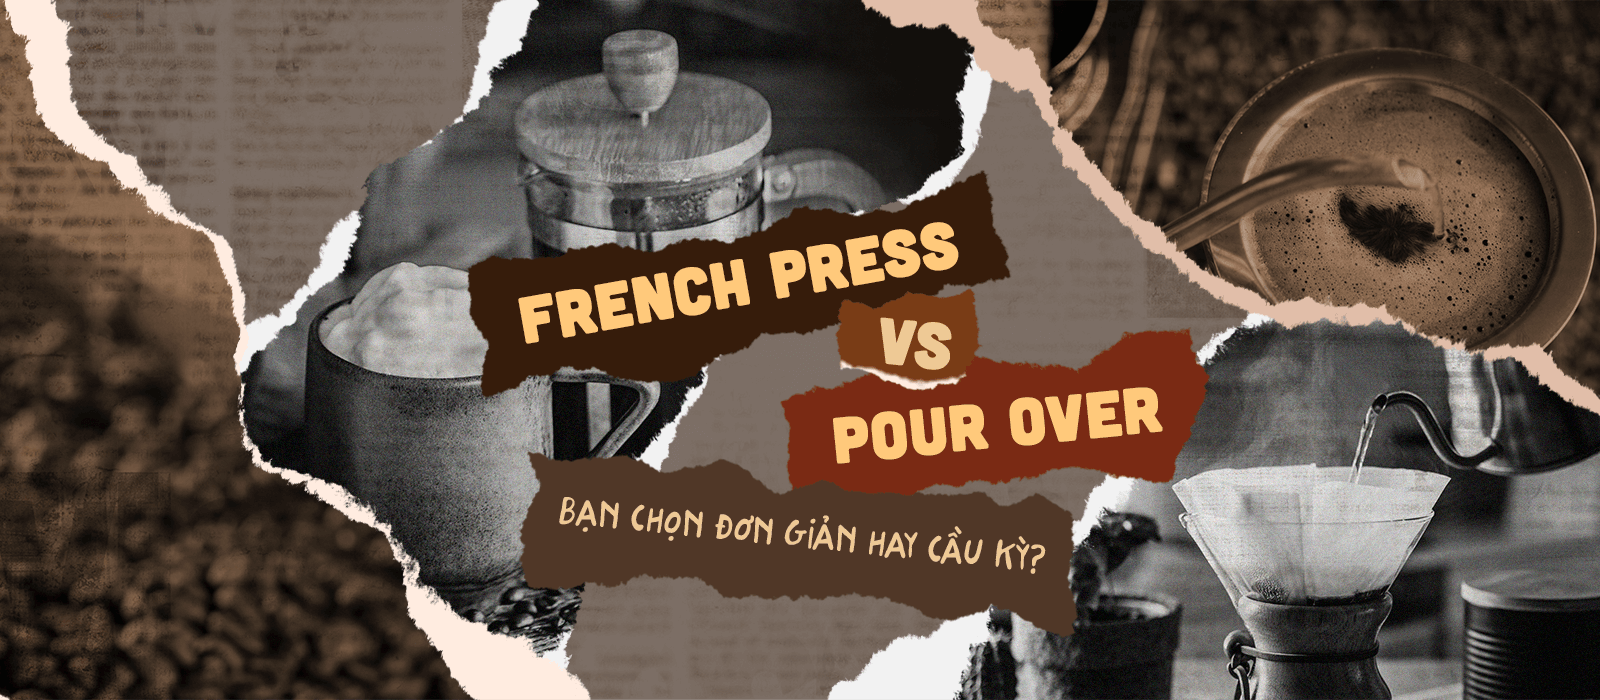 French Press vs Pour Over Bạn chọn đơn giản hay cầu kỳ?